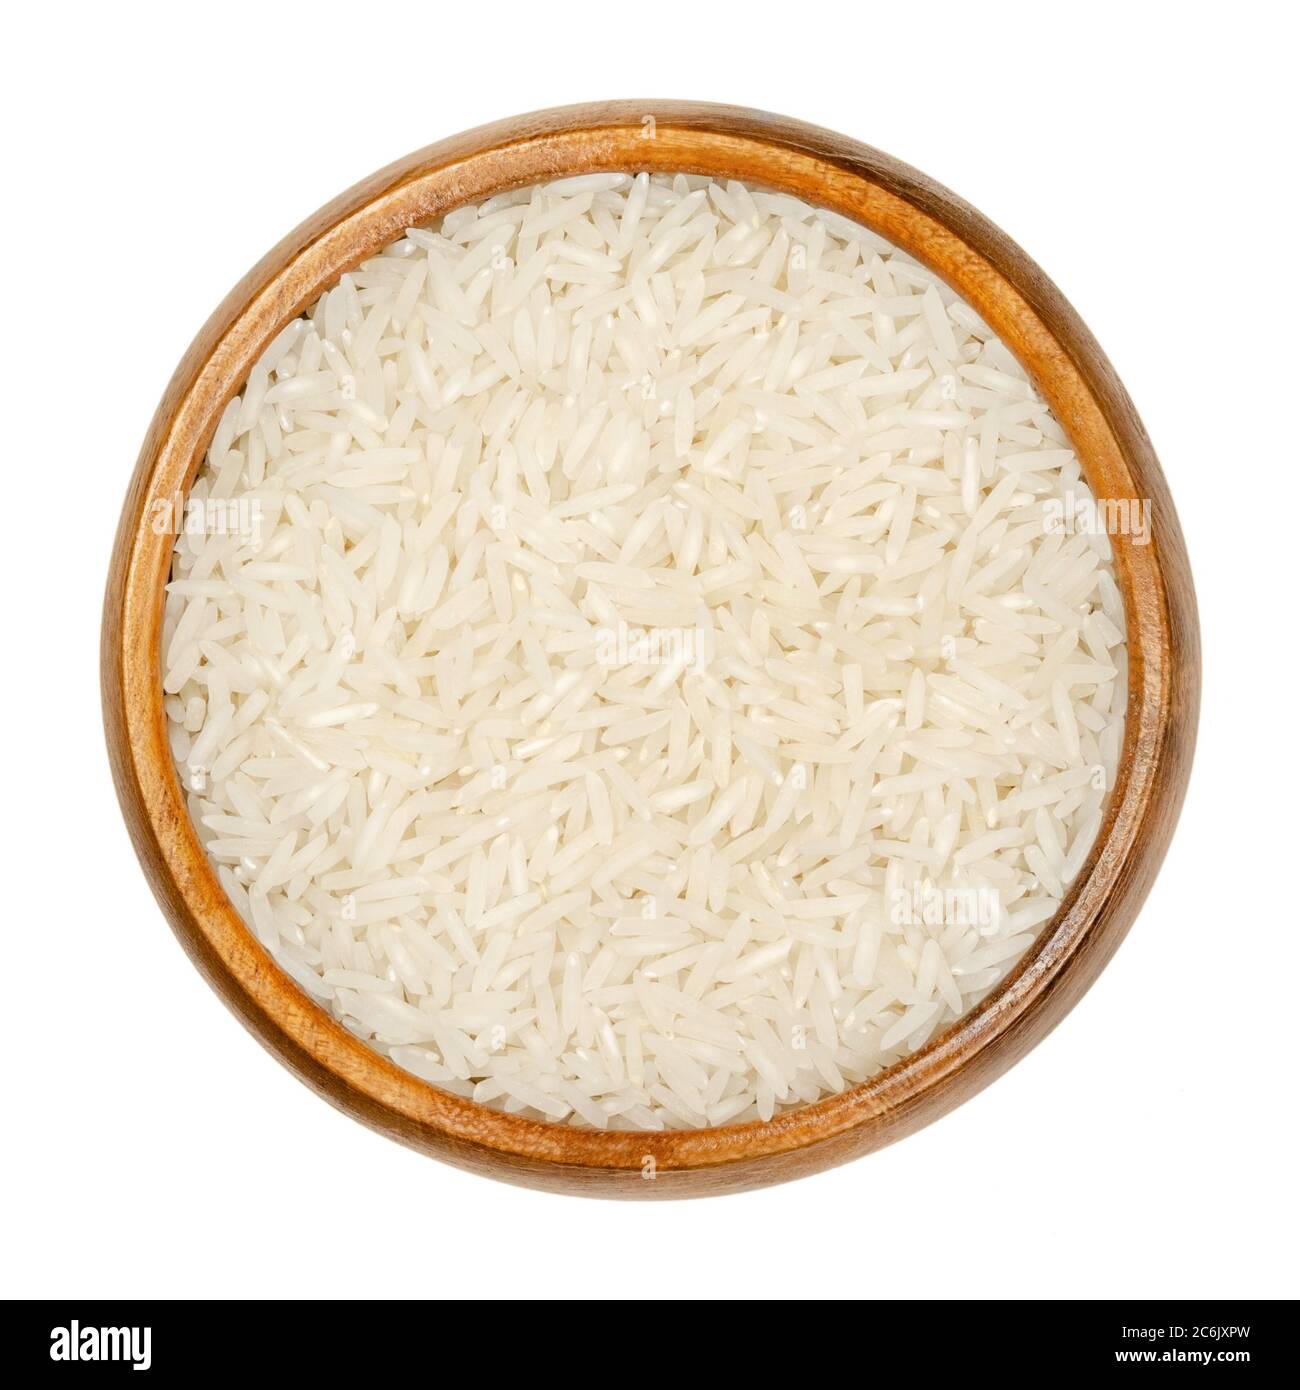 Riz Basmati blanc dans un bol en bois. Variété de riz aux grains longs et minces, avec odeur et goût aromatiques, traditionnellement du sous-continent indien. Banque D'Images